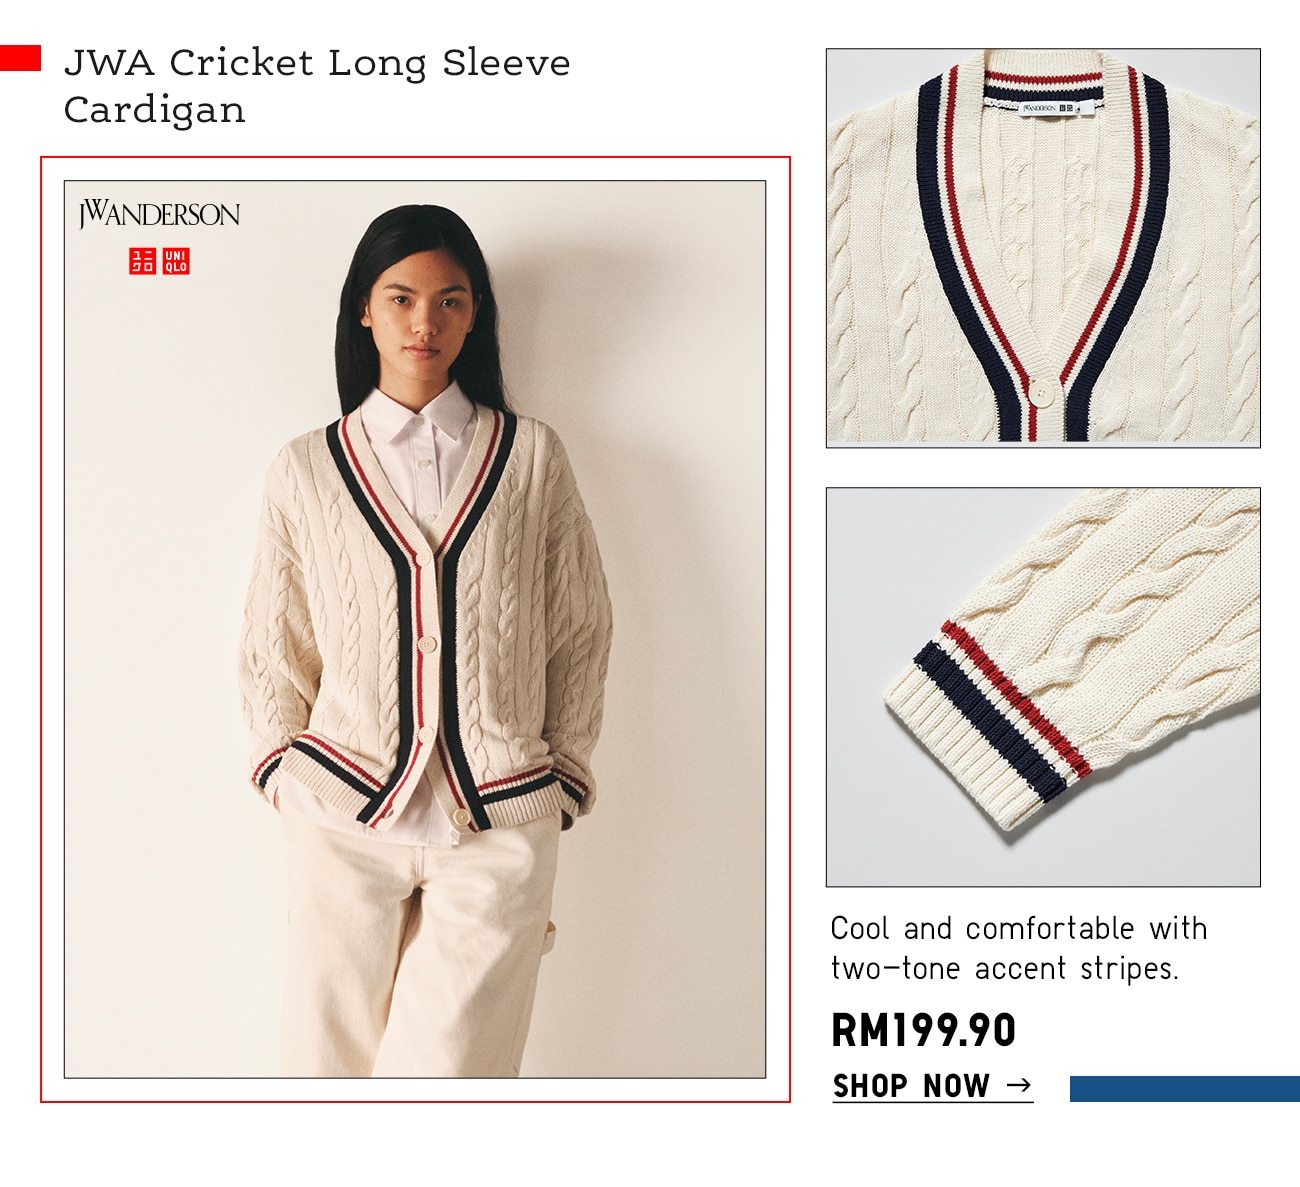 JWA Cricket Long Sleeve Cardigan